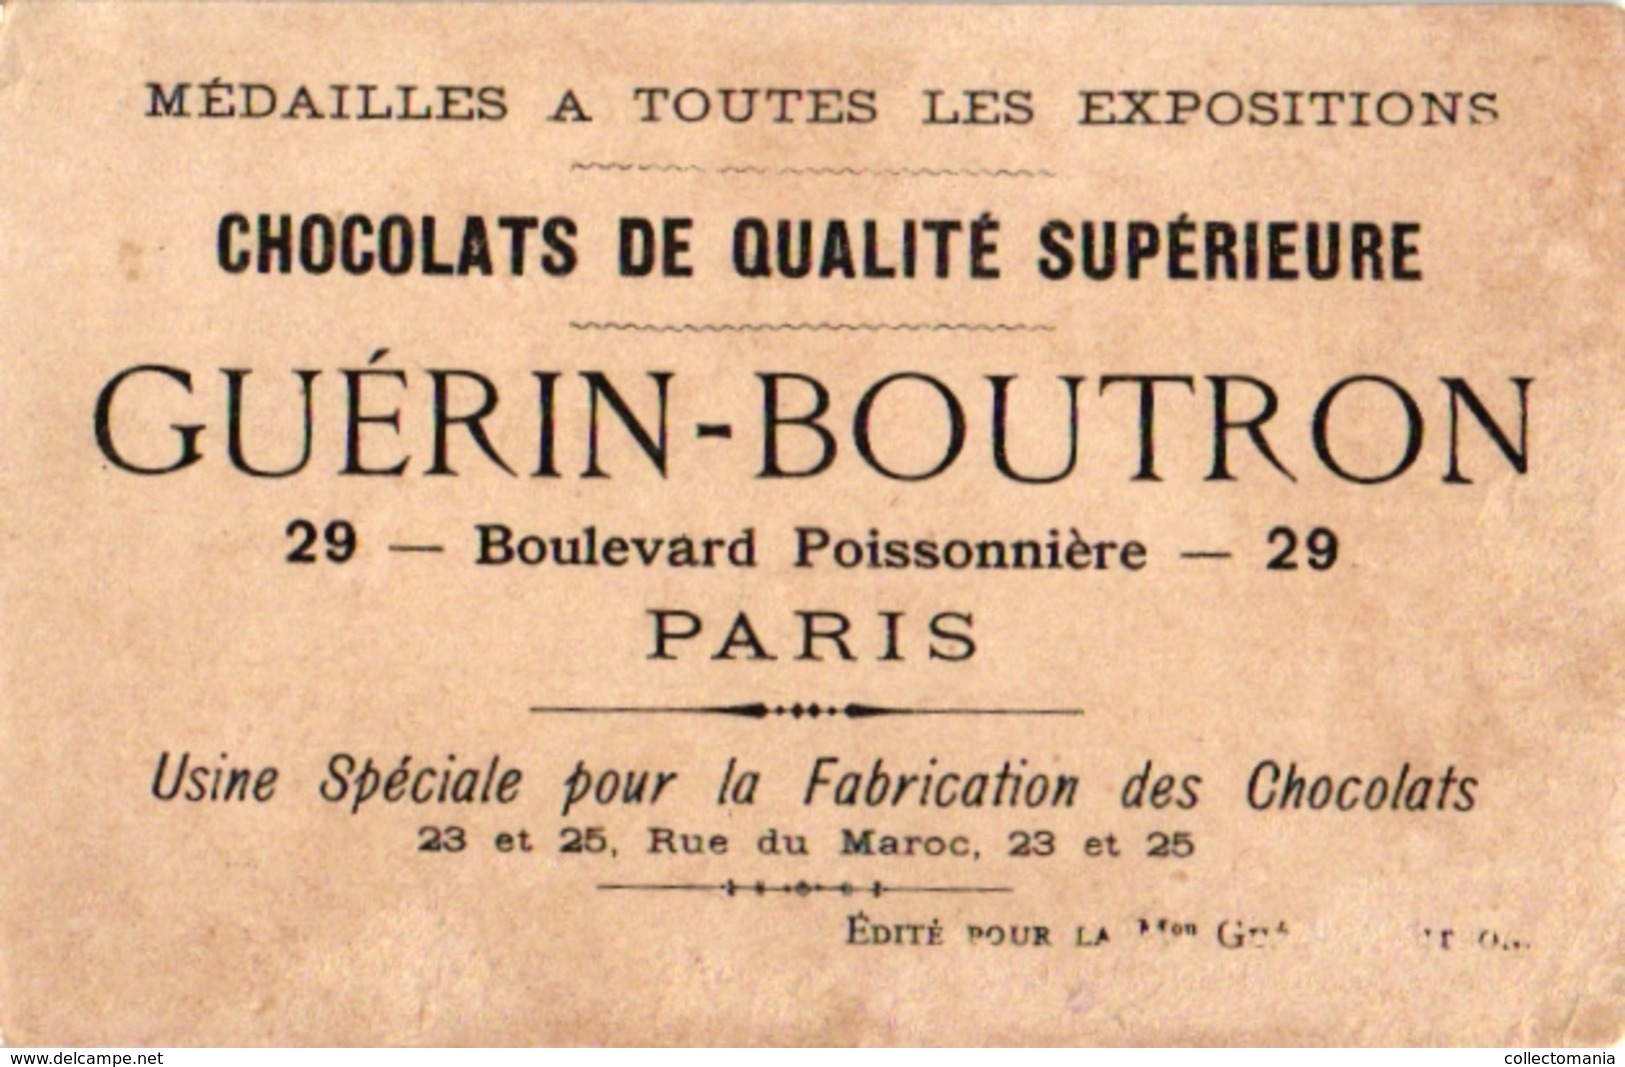 5 litho chromo CARDS c1900 CROQUET GAME JEU de CROQUET Krocketspiel Pub Lyon Choc Guérin Boutron Pithiviers